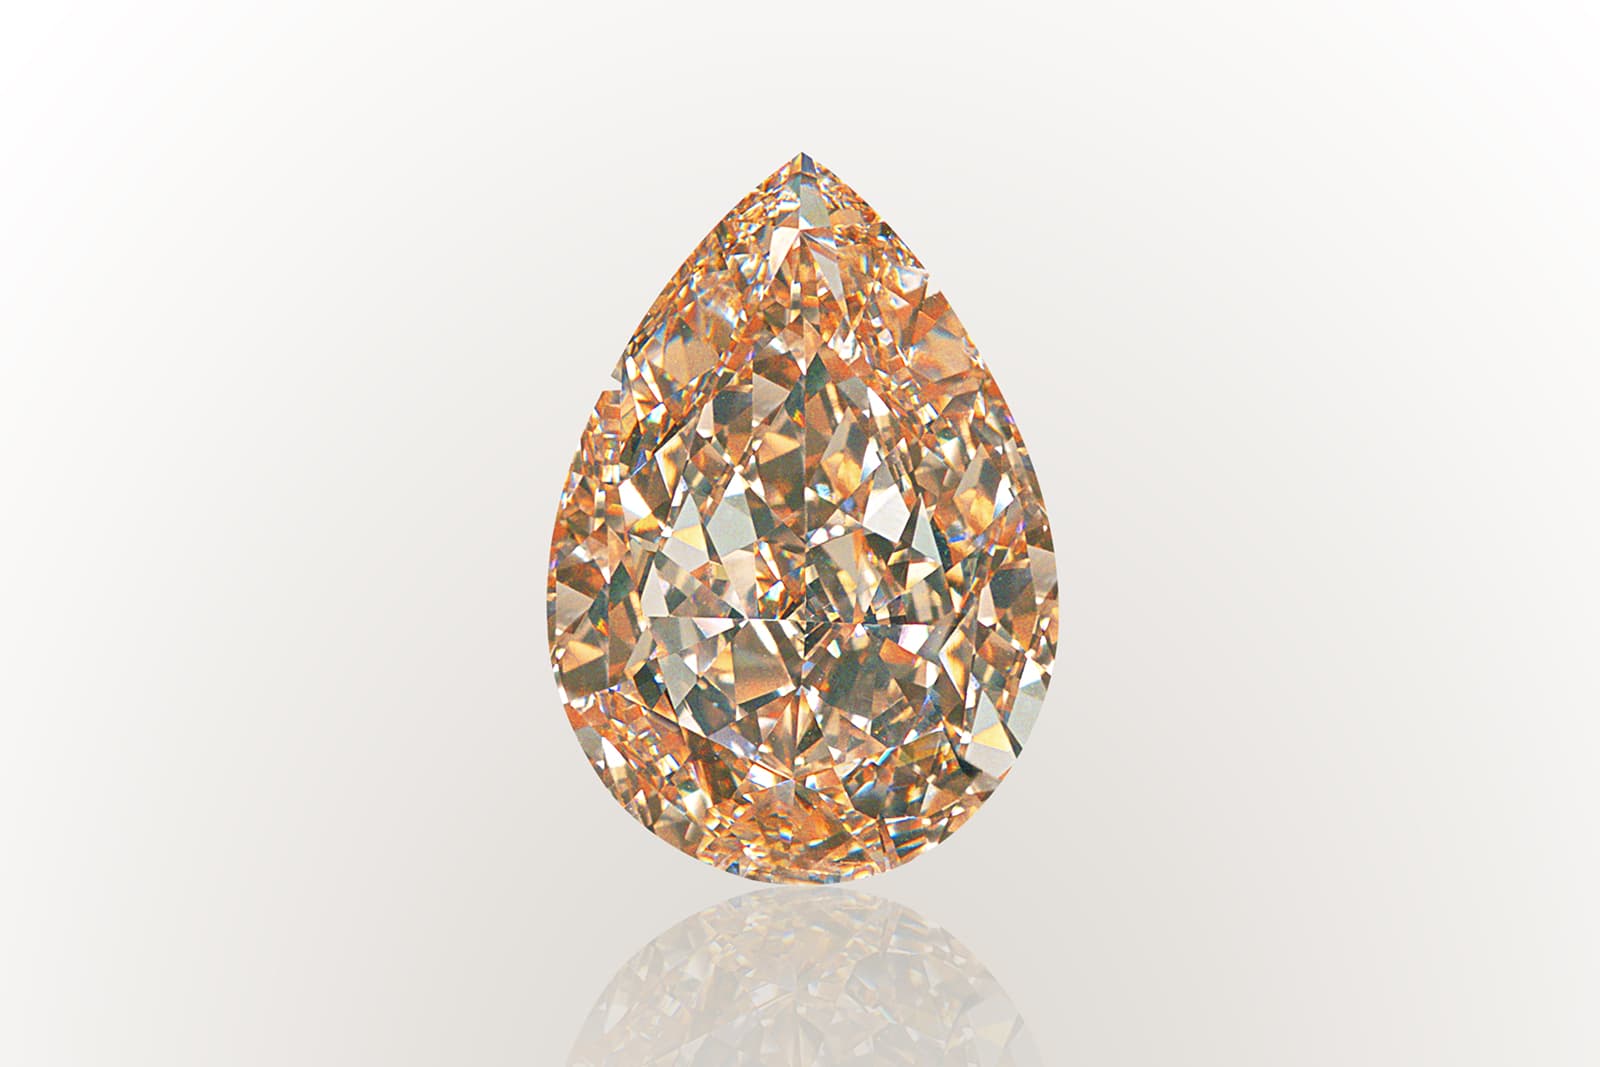 Компания АЛРОСА занимается не только добычей алмазов, но и их огранкой, особенно если работники обнаруживают особо крупные или цветные образцы